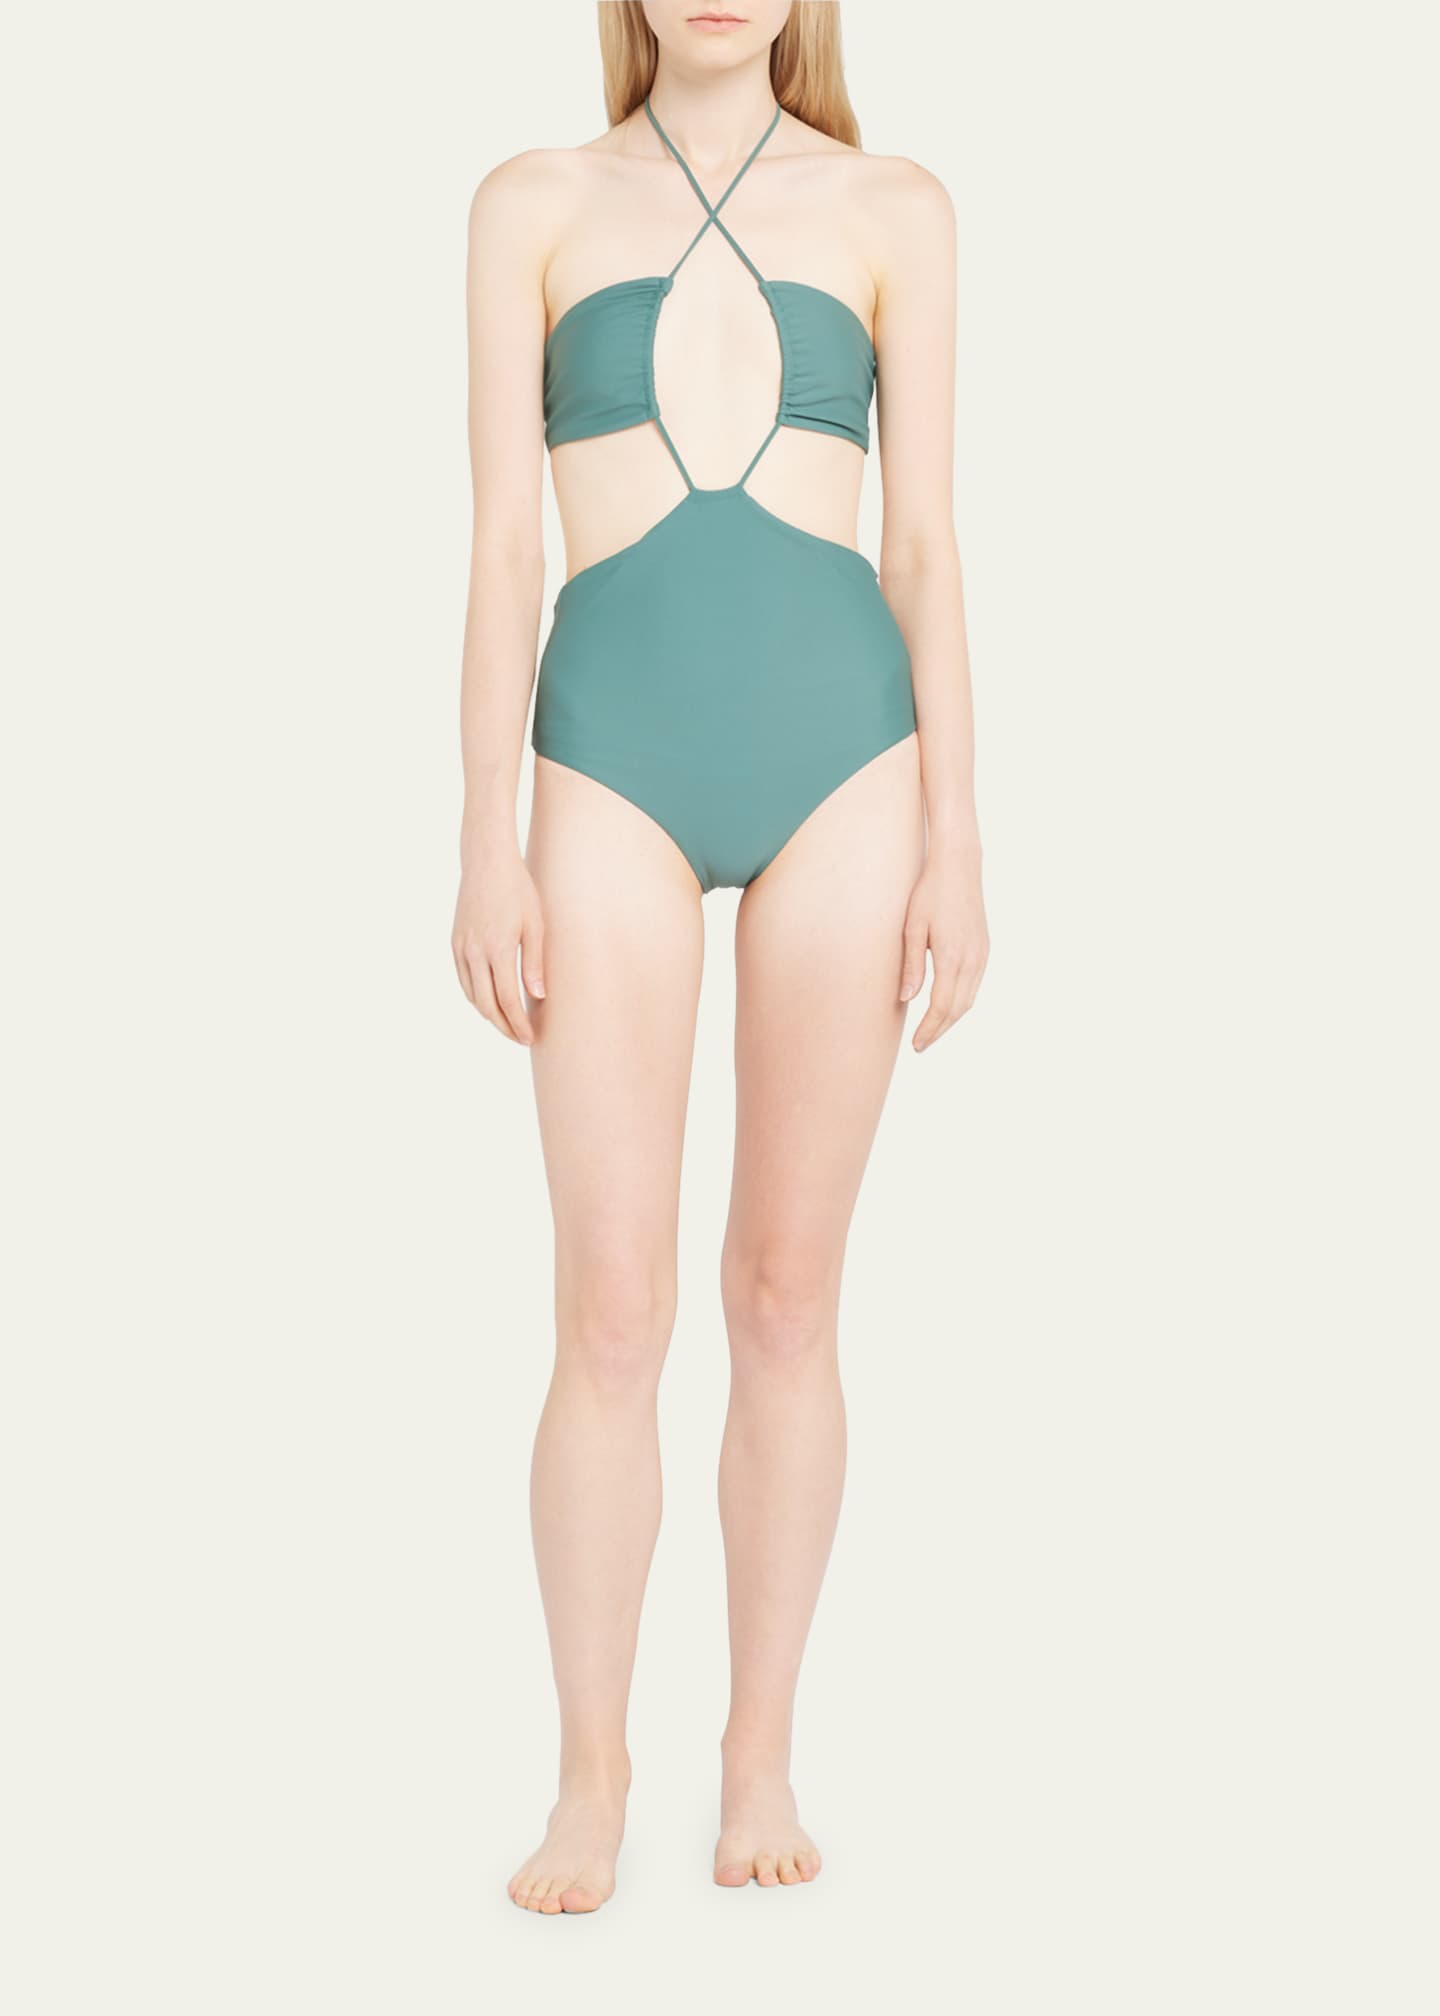 Pocket Short Bodysuit - Jade - FINAL SALE